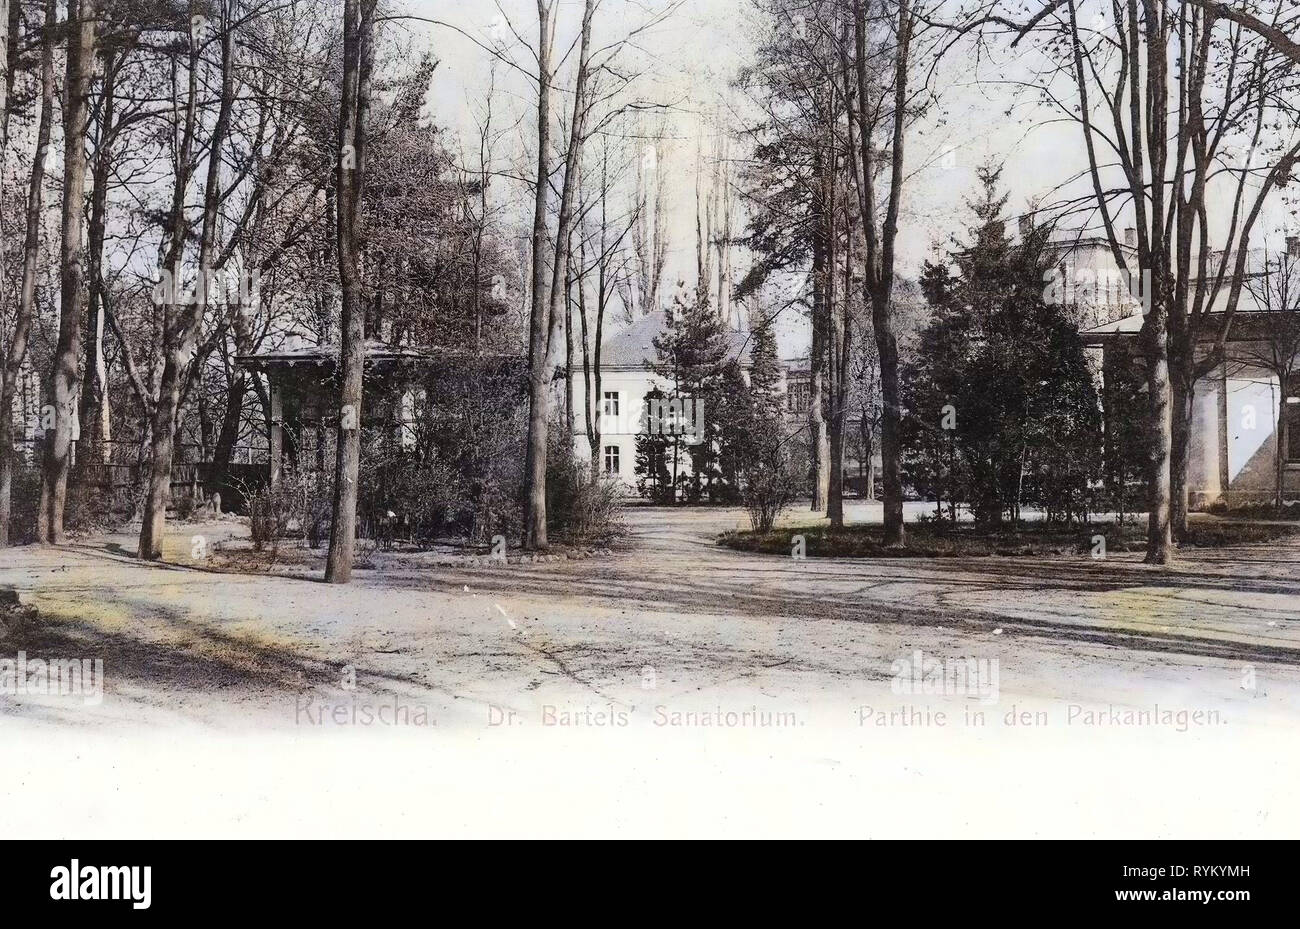 Bâtiments Spa en Saxe, Kreischa, 1903, Landkreis Sächsische Schweiz-Osterzgebirge, M. Bartels Sanatorium Parkanlagen, Allemagne Banque D'Images